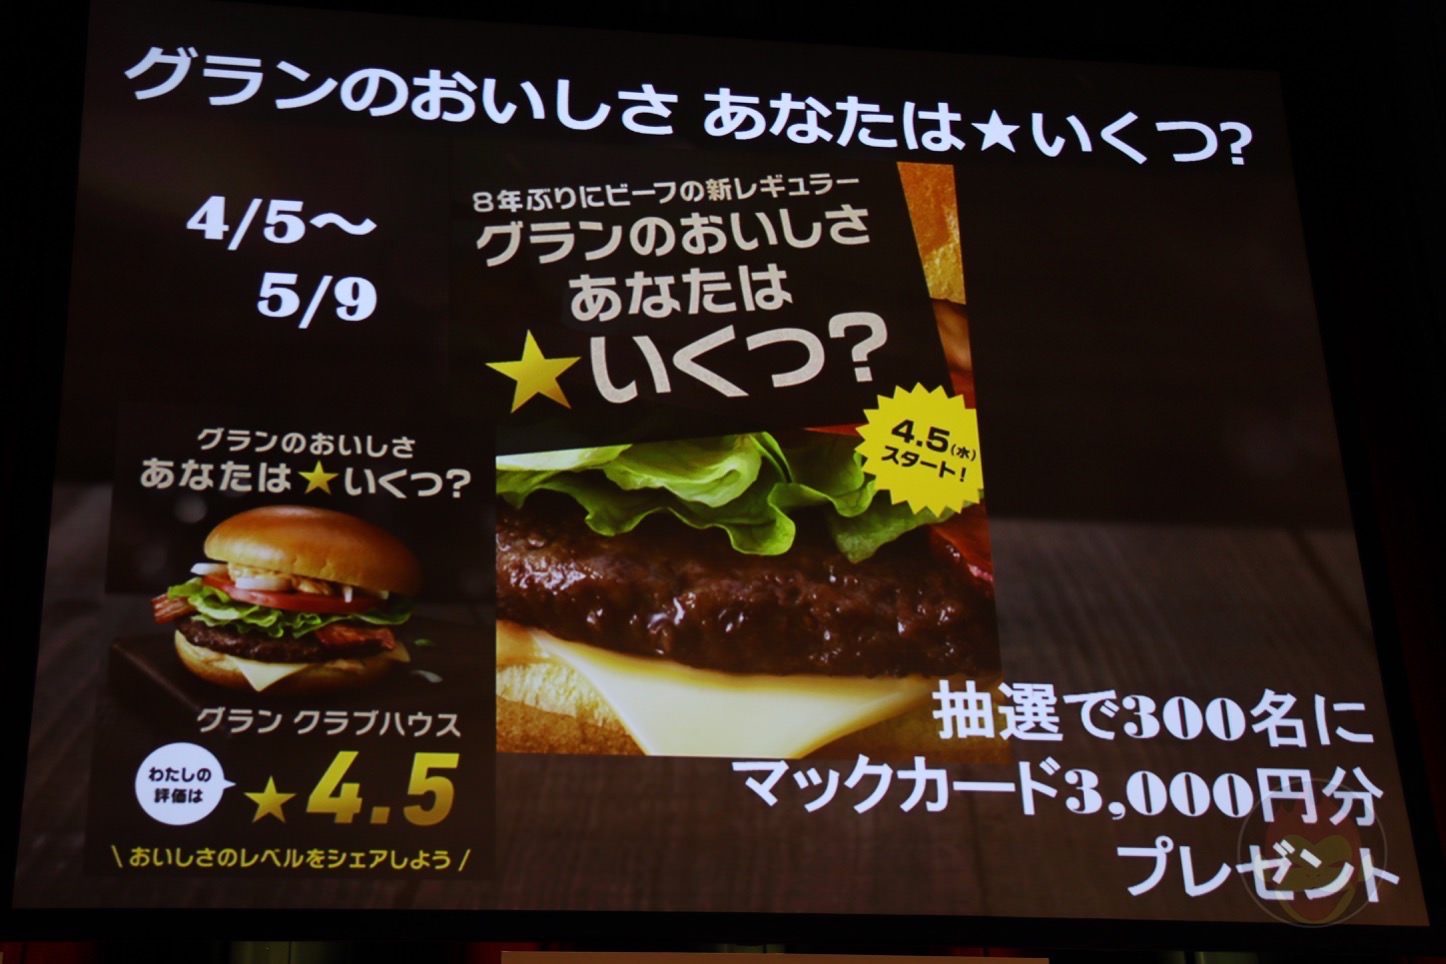 McDonalds-New-Japanese-Menu-Gran-Burgers-03.jpg